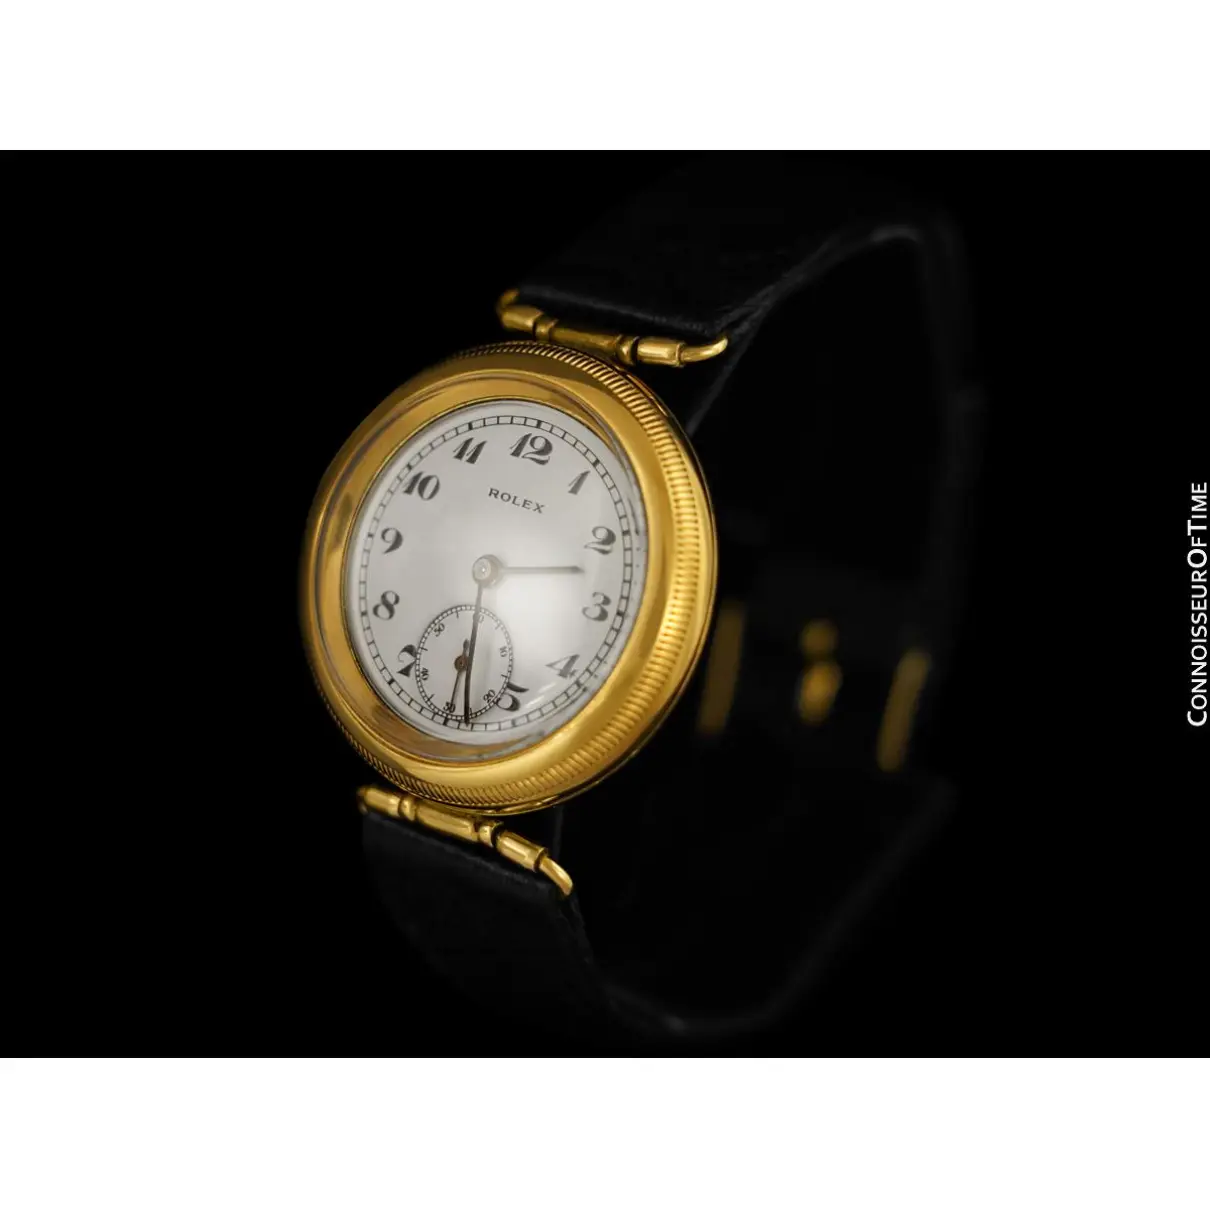 Luxury Rolex Watches Men - Vintage